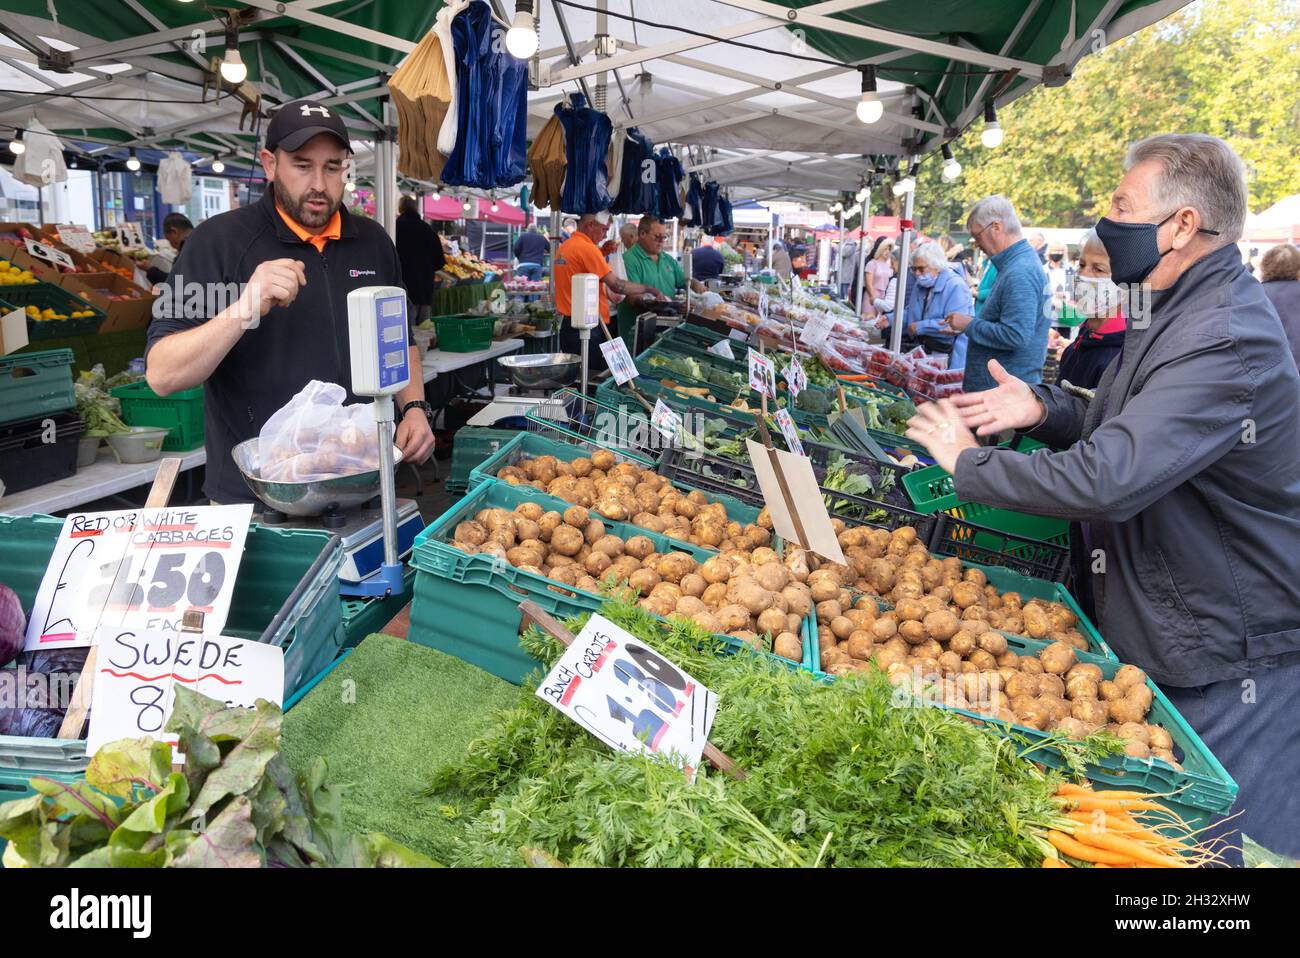 Greengrocer stall UK, vendant des légumes à un client dans un masque pendant la pandémie COVID 19, marché de Salisbury, Salisbury Wiltshire UK Banque D'Images